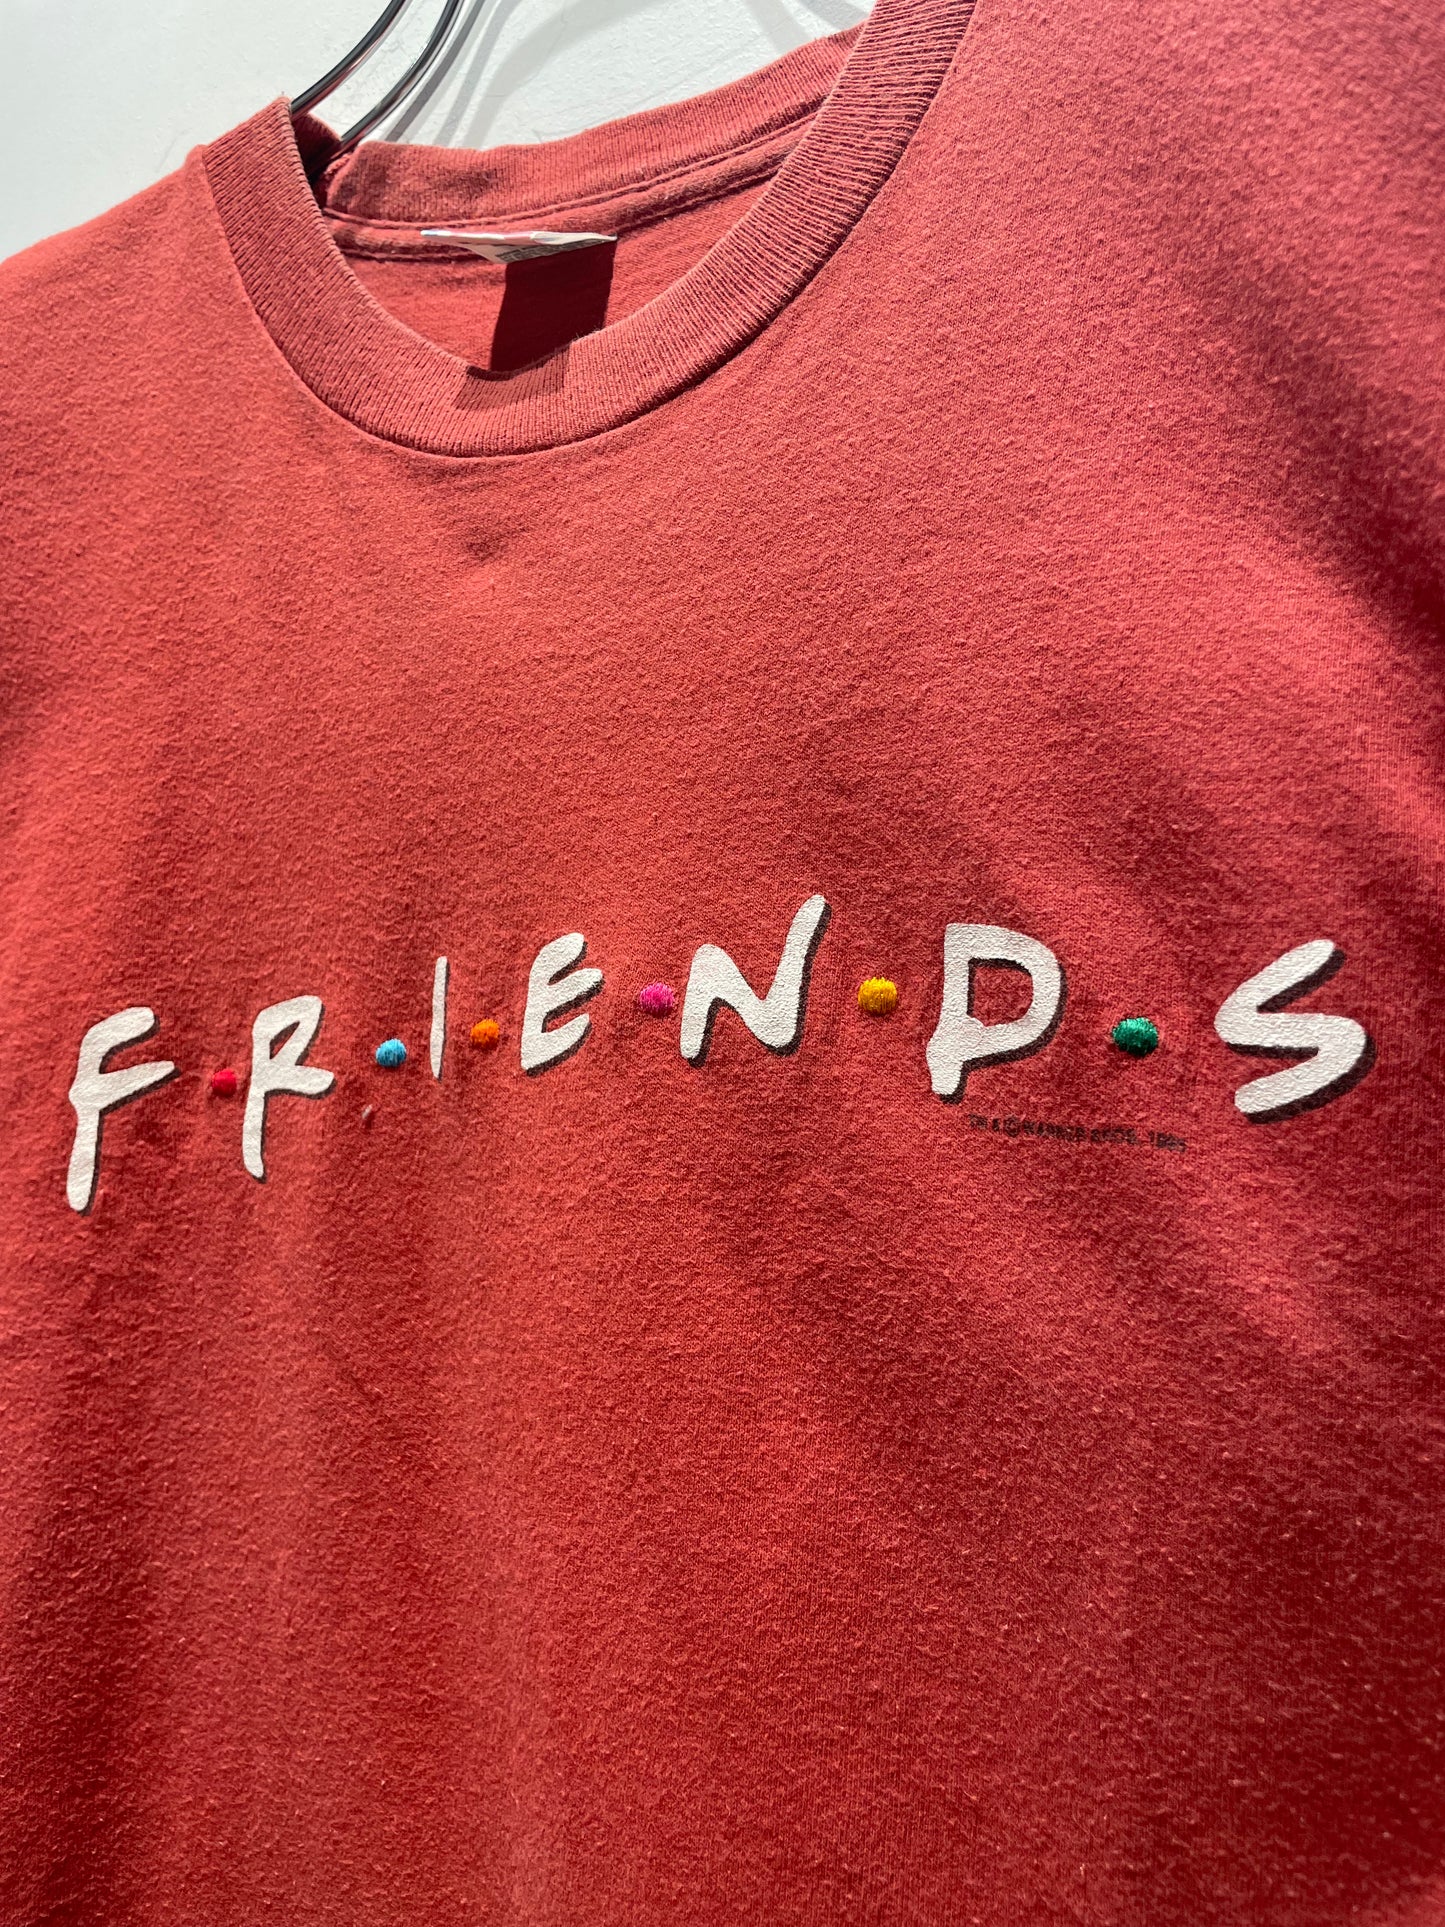 【古着】©️1995 FRIENDS フレンズ Tシャツドラマ シングルステッチ